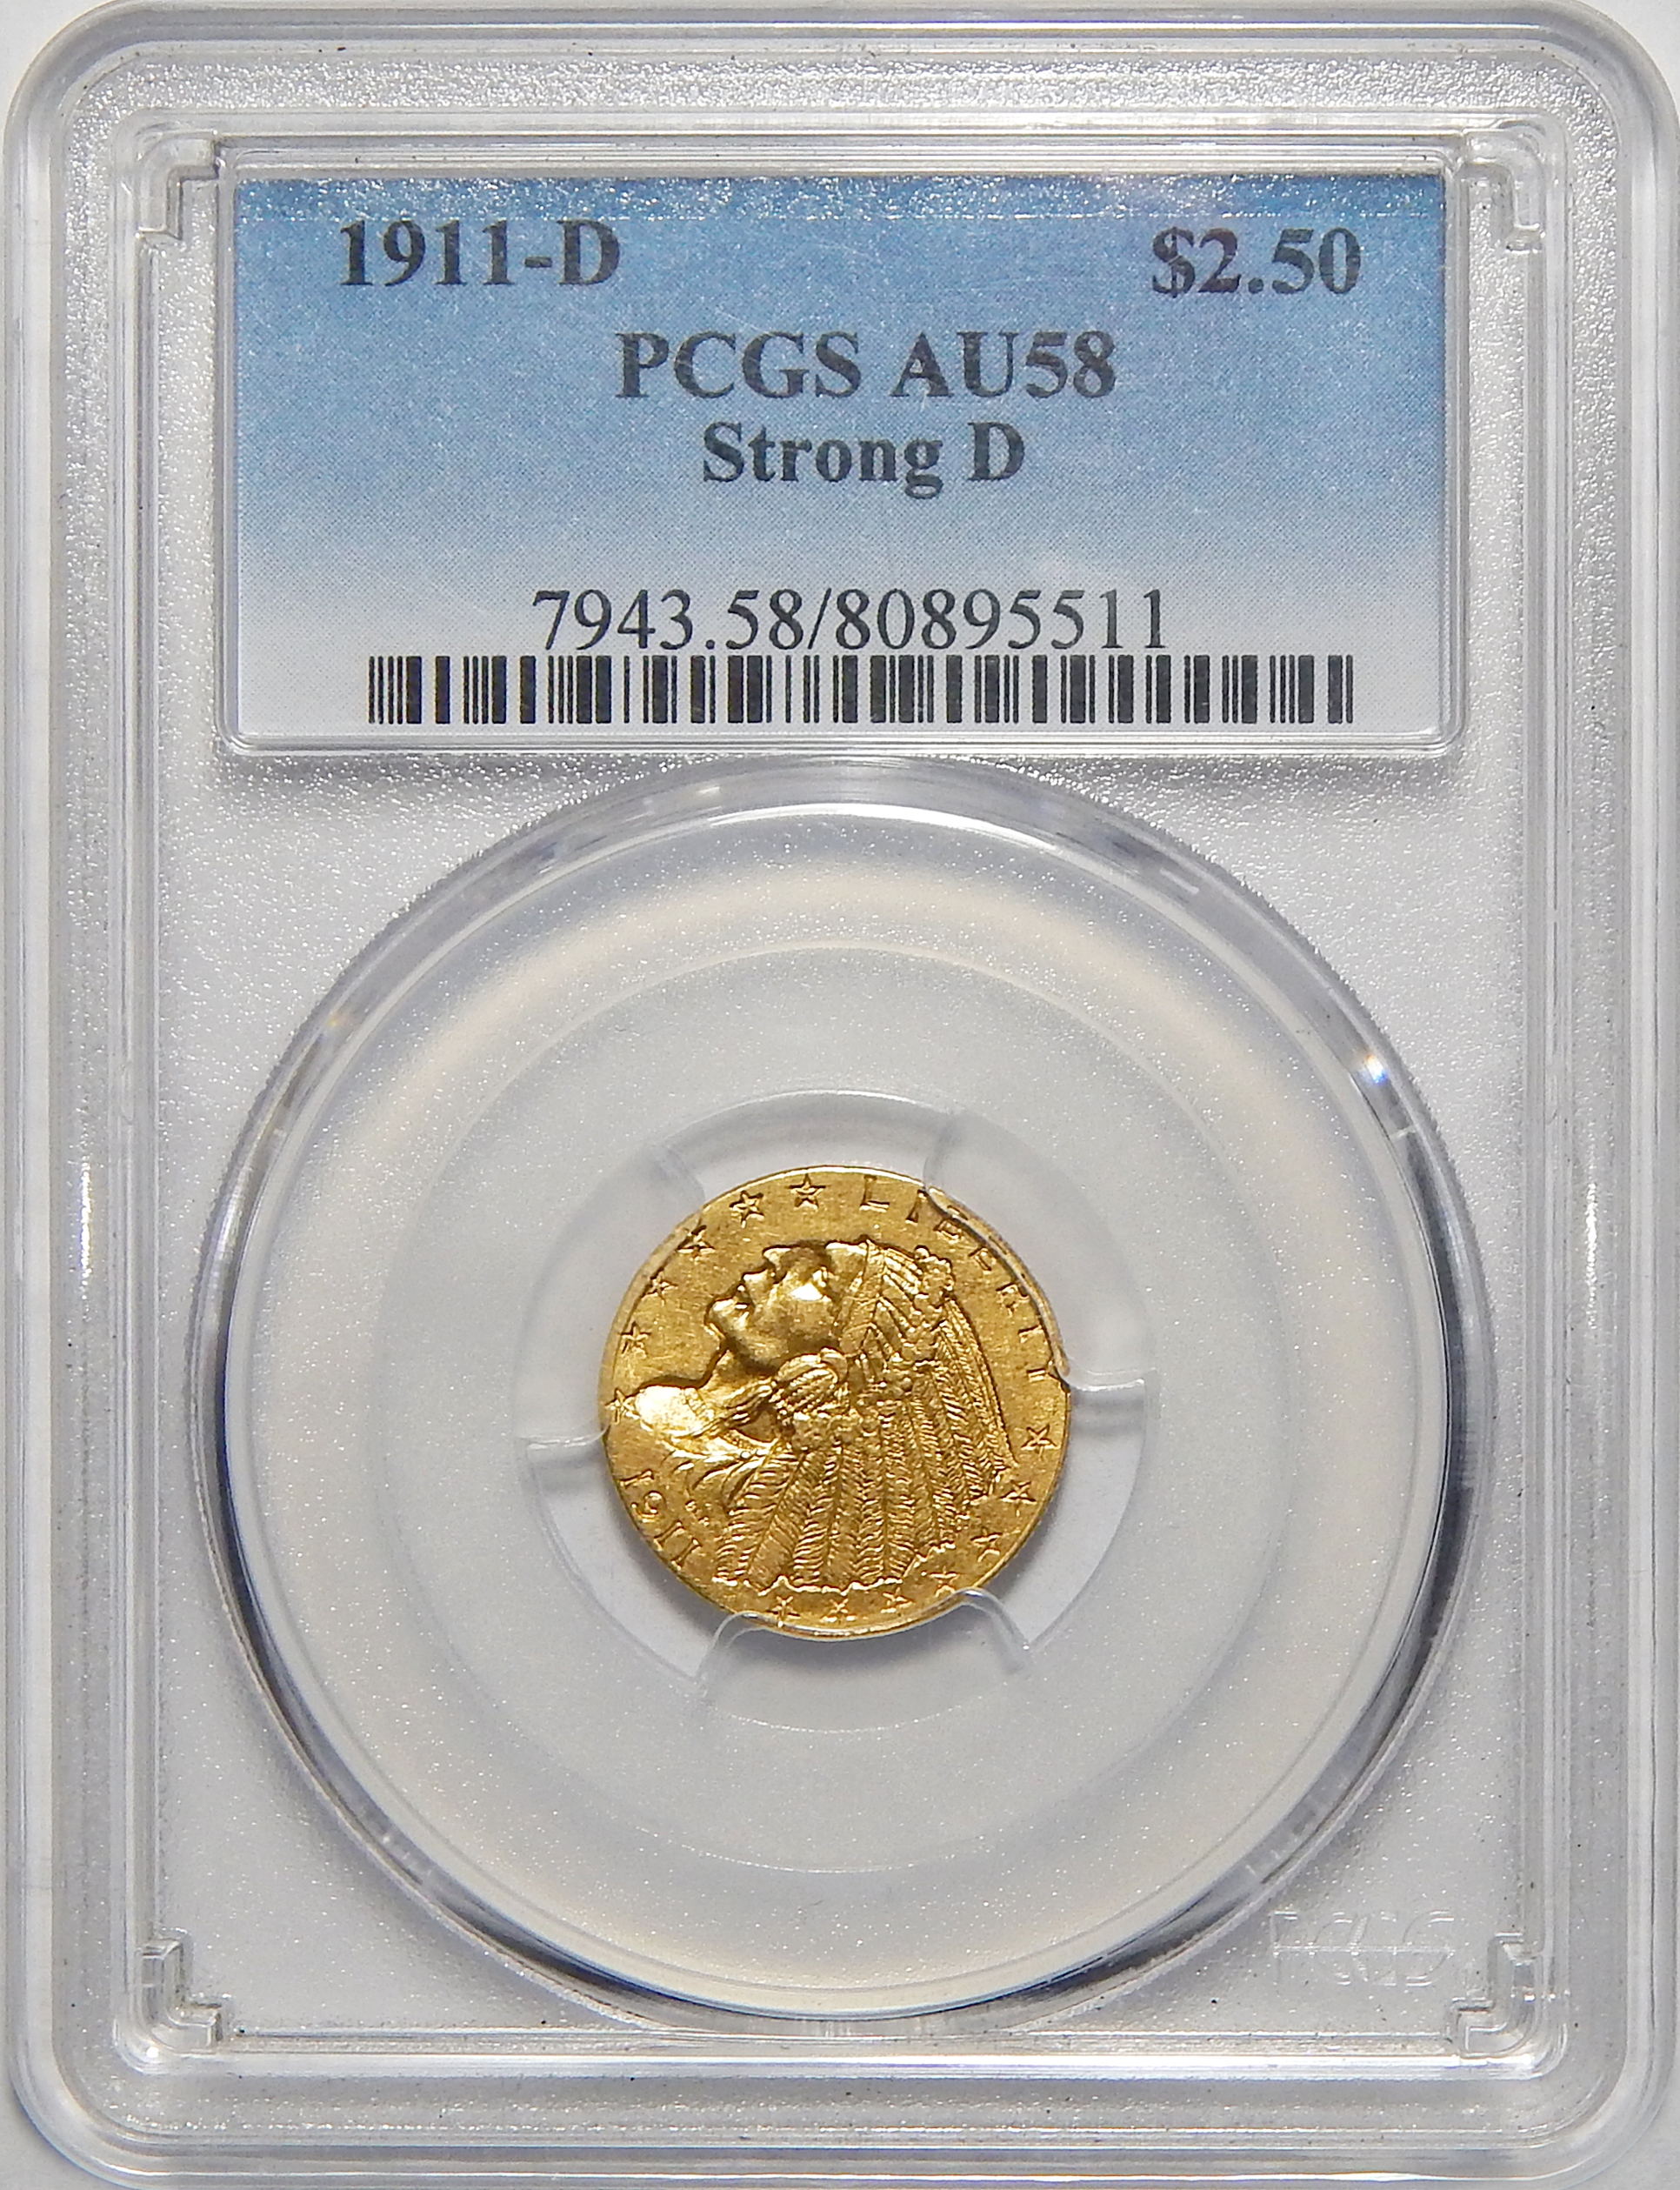 1911-D PCGS AU58 STRONG-D $2.50 INDIAN GOLD